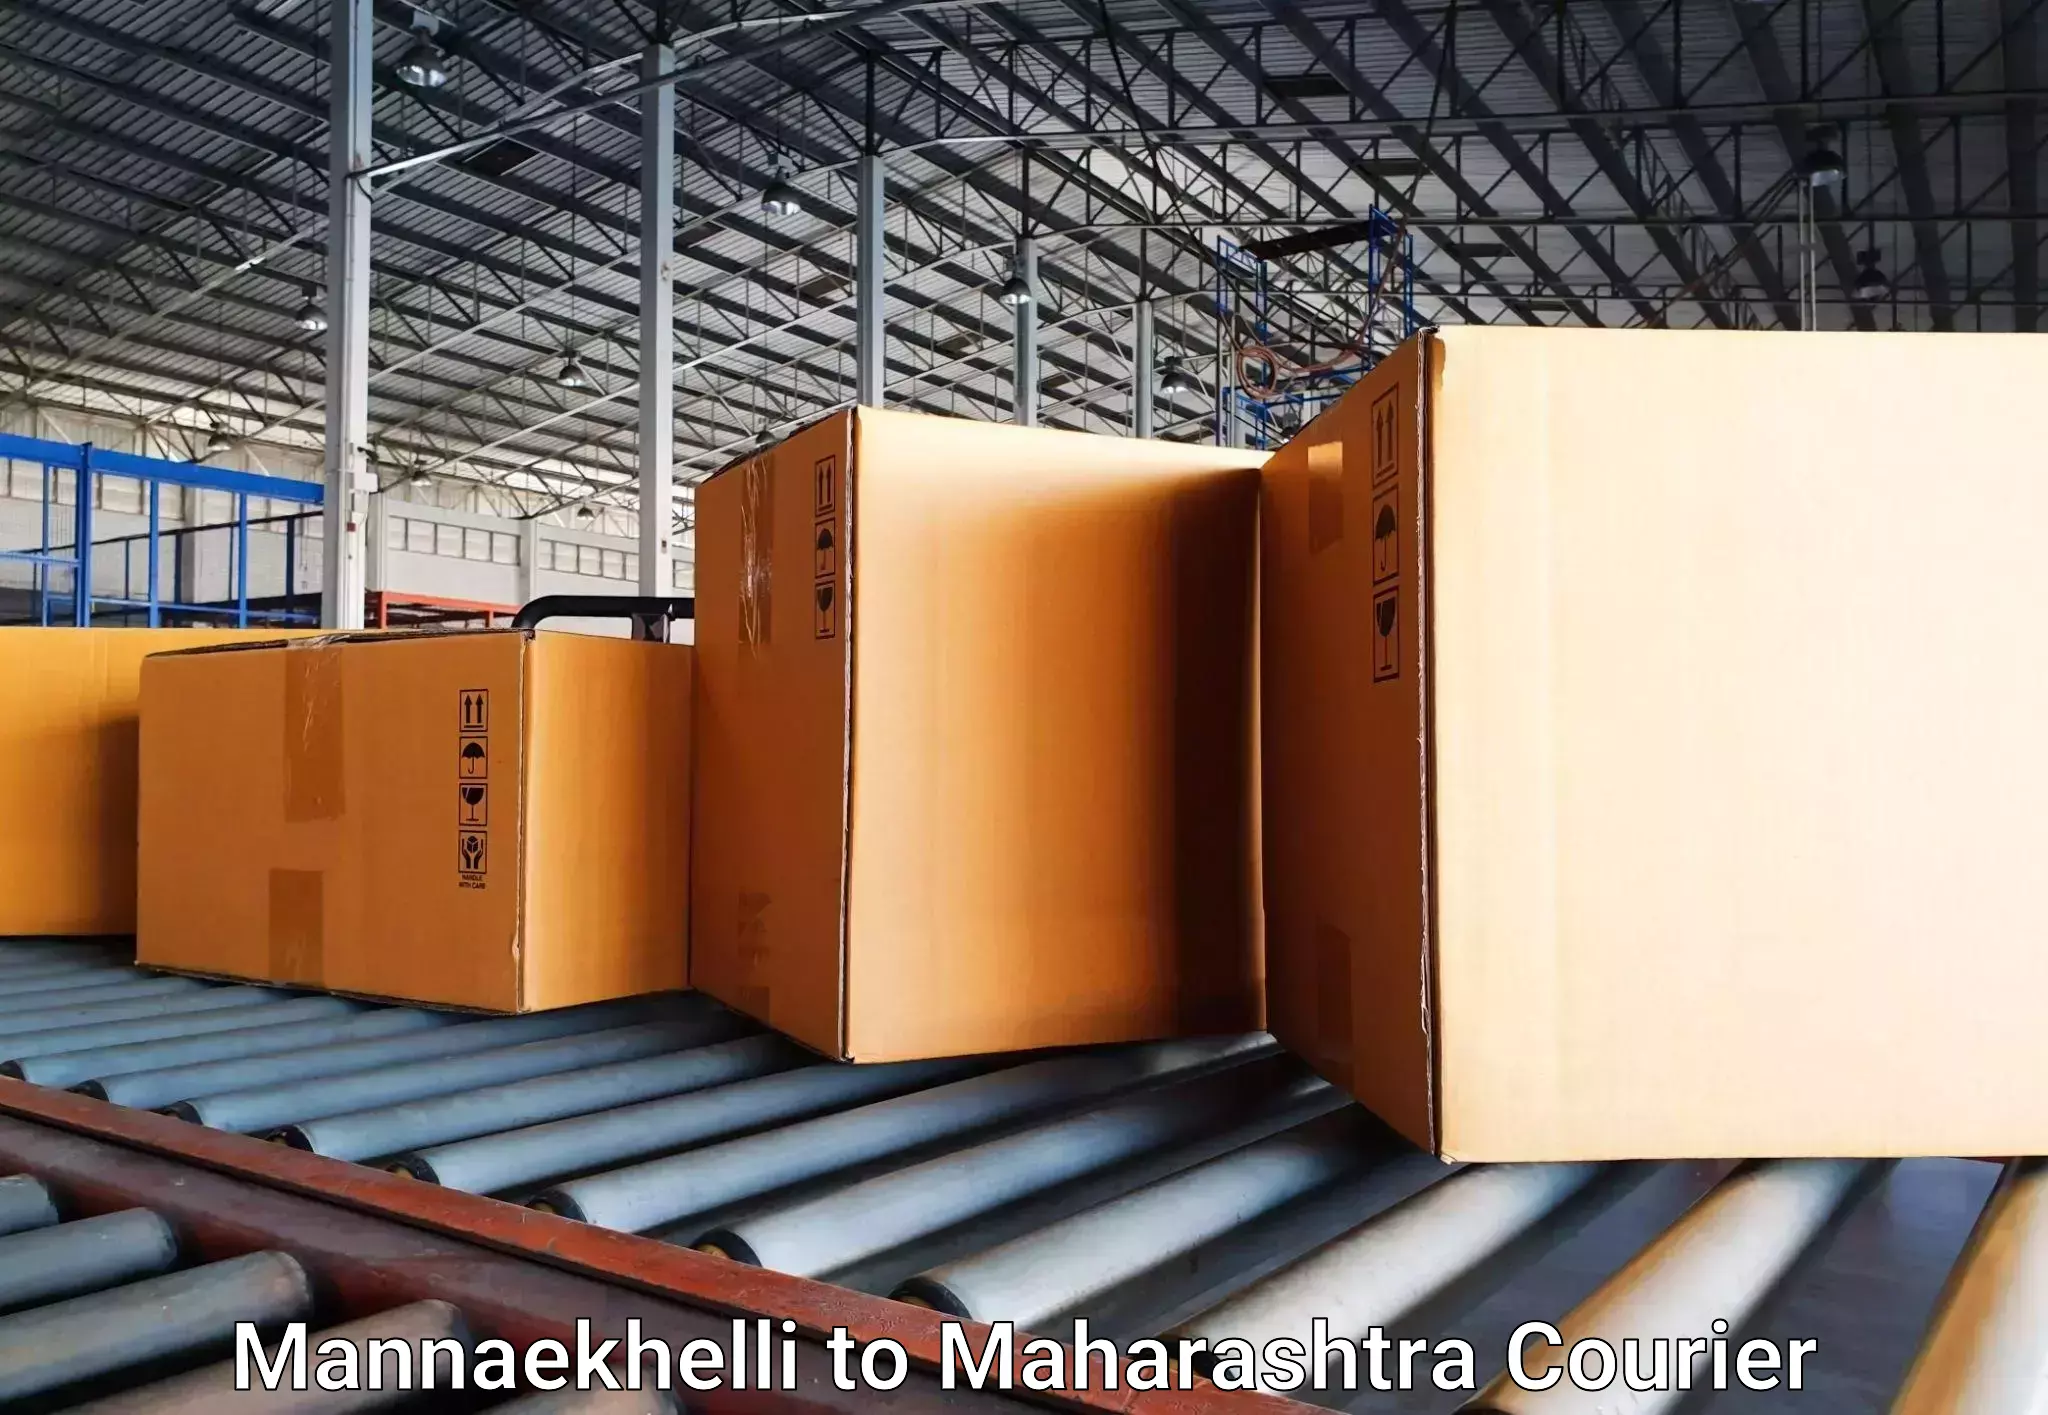 Luggage transit service Mannaekhelli to Maharashtra